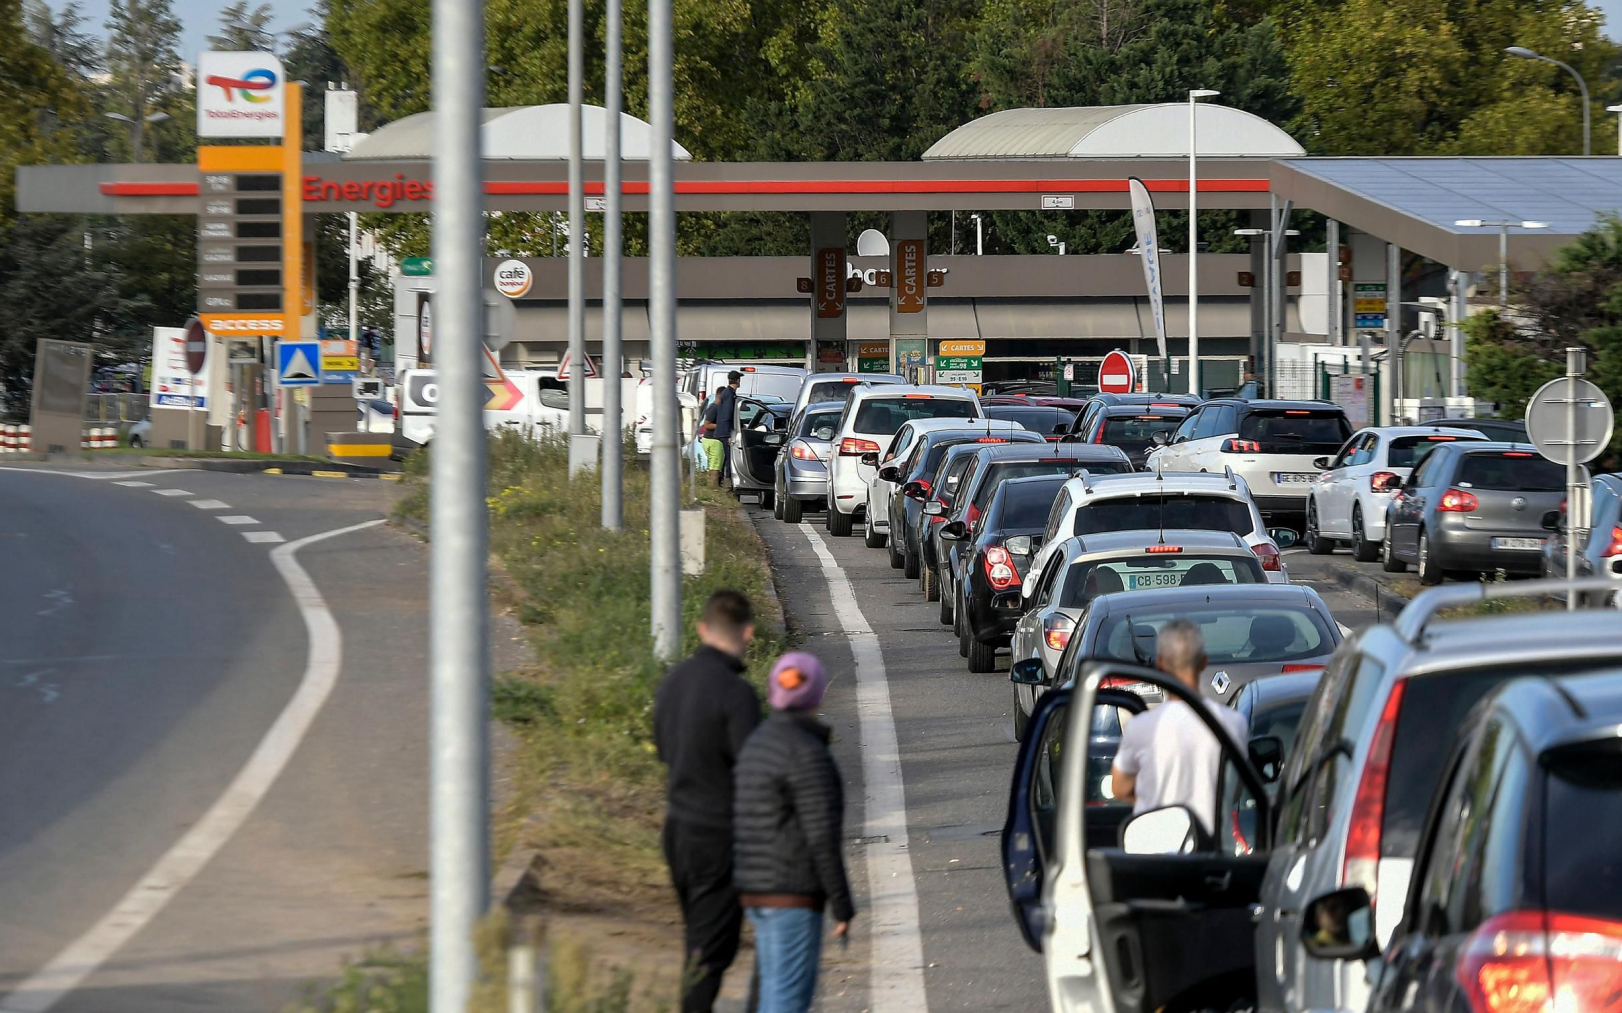 À Bron, près de Lyon (Rhône) le 9 octobre 2022. Des dizaines de voitures patientent pour faire le plein de carburant devant une station service Total. PhotoPQR/Le Progrès/Maxime Jegat